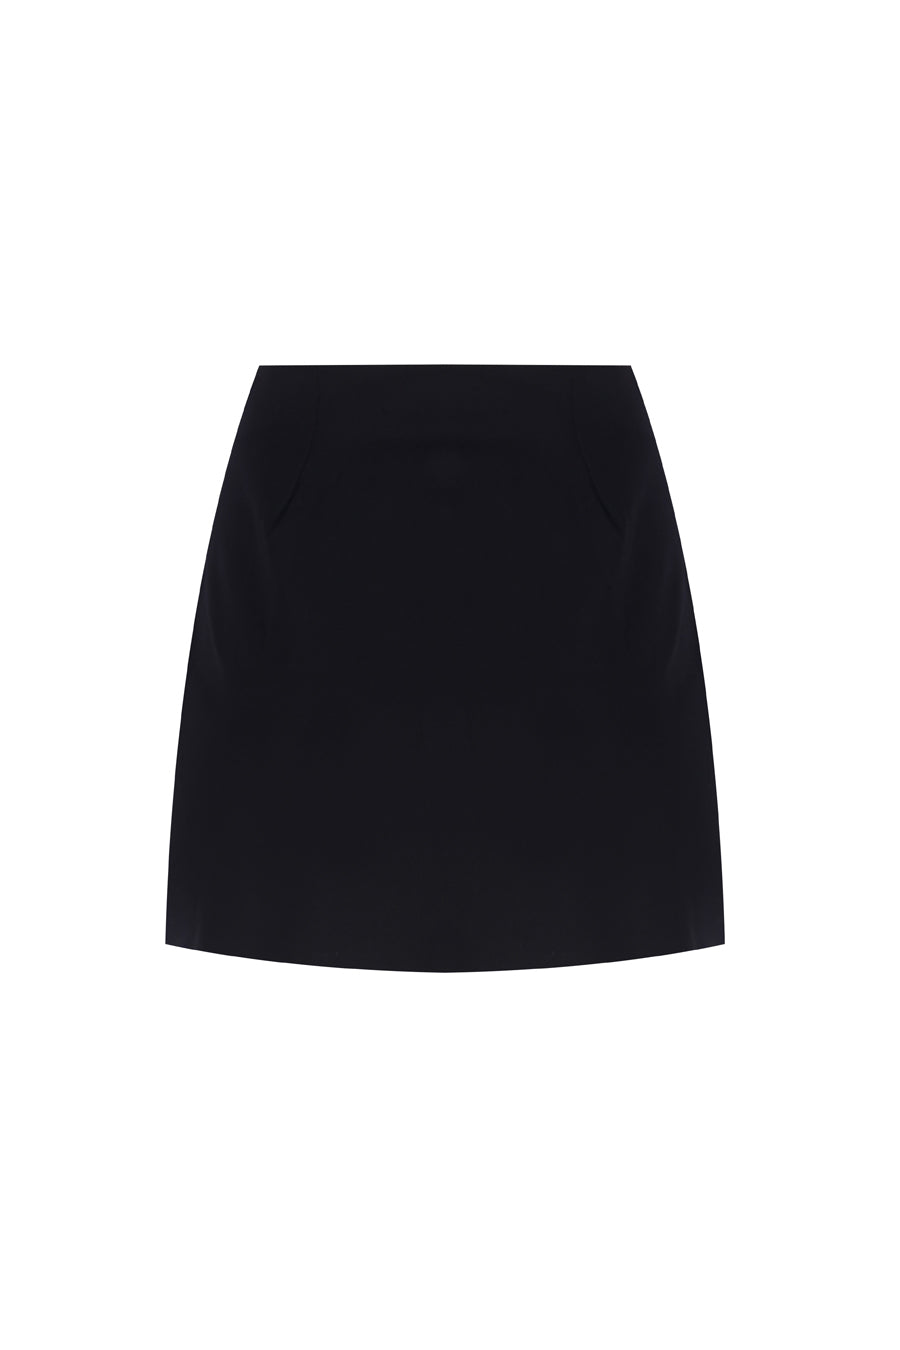 Court Mid-Rise Black Skirt